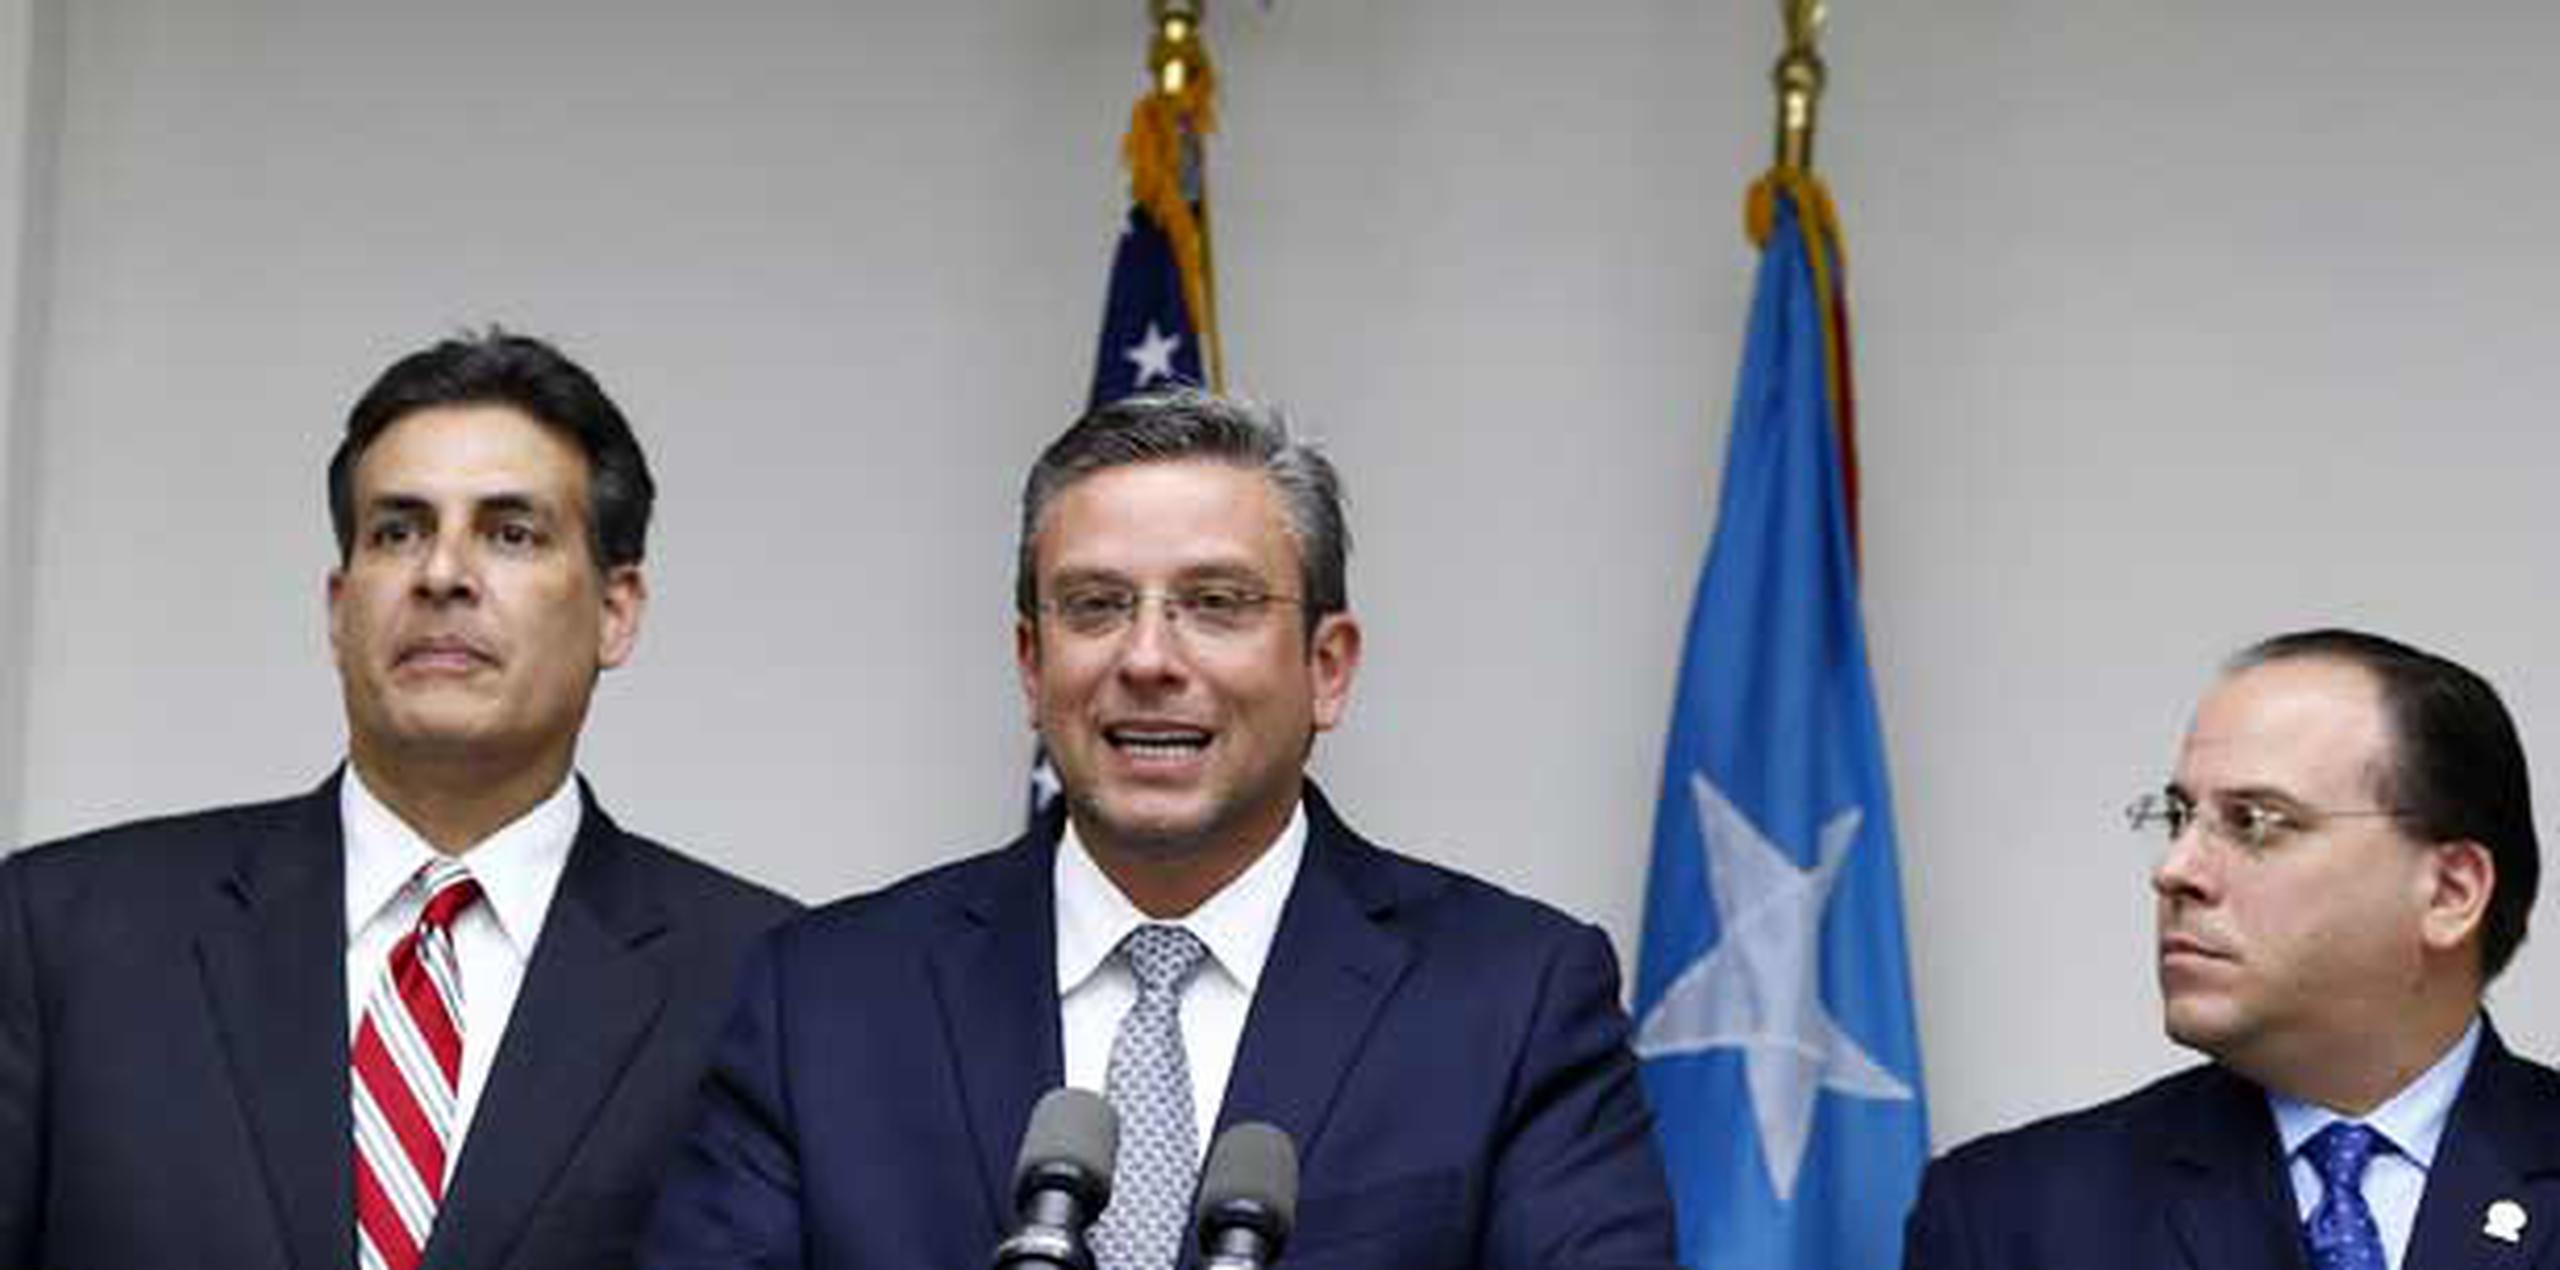 El gobernador hizo el anuncio acompañado de los presidentes legislativos, Eduardo Bhatia y Jaime Perelló. (jose.madera@gfrmedia.com)